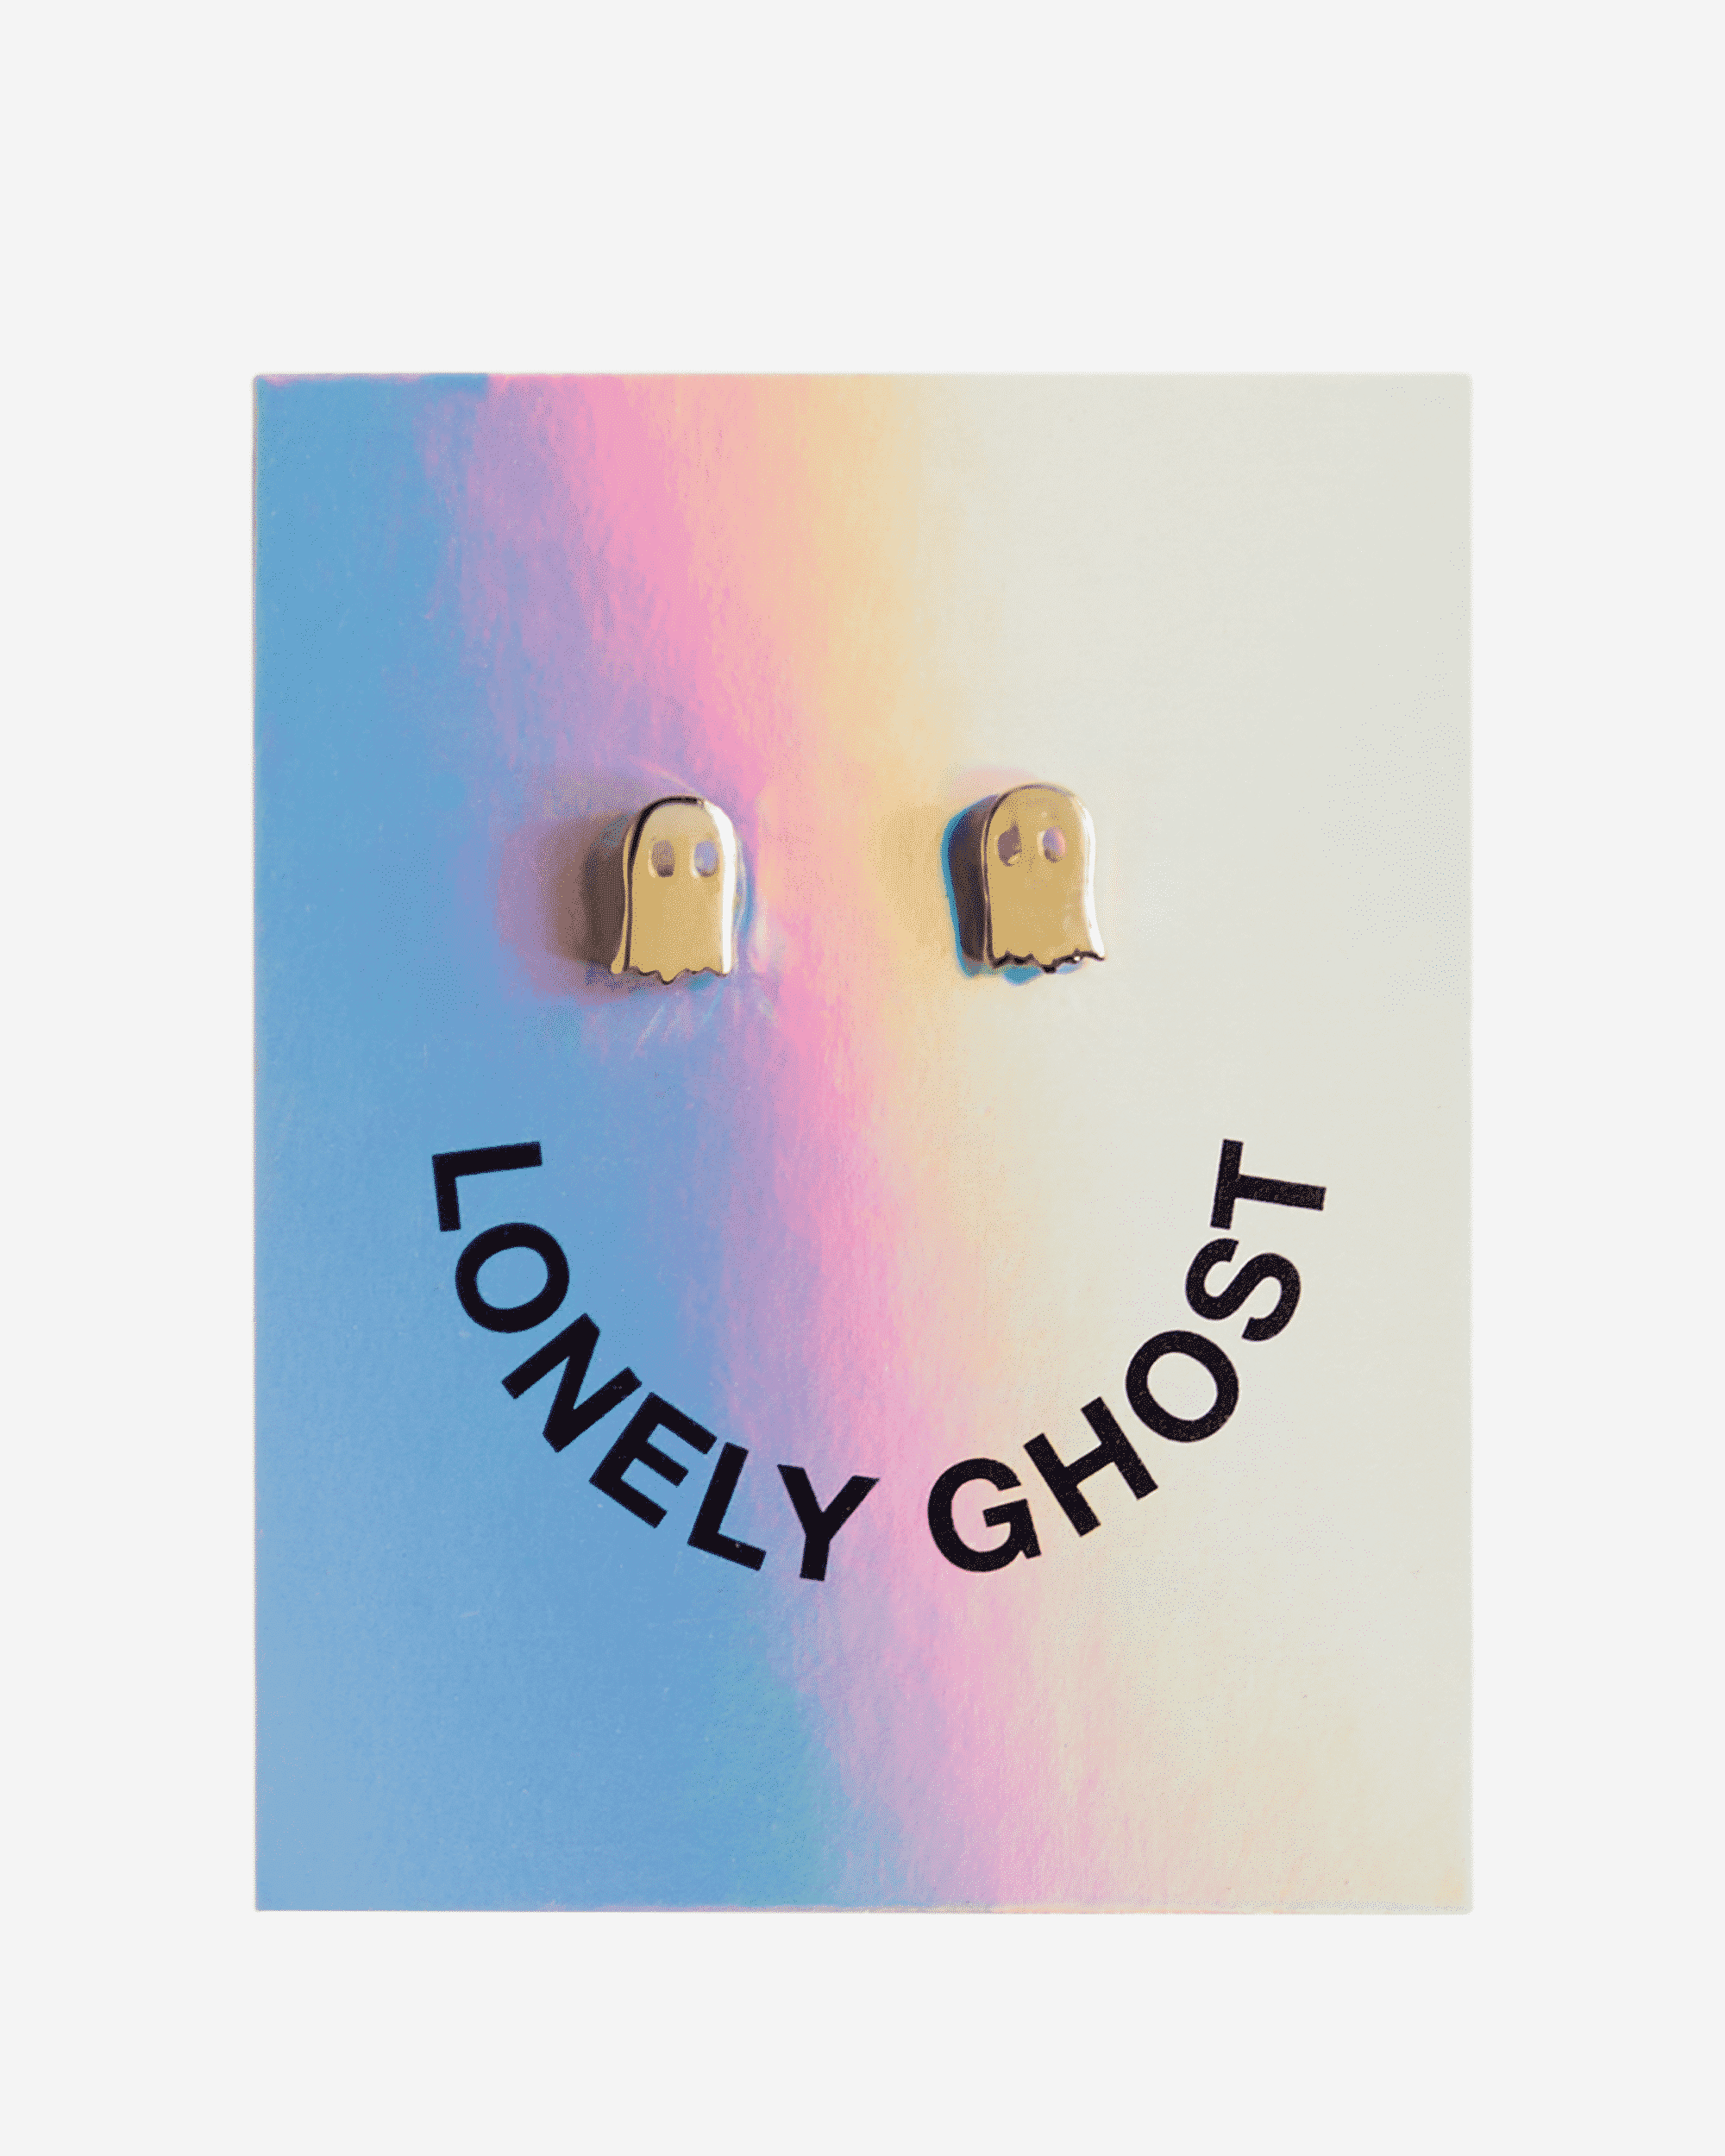 Ghosty Earrings